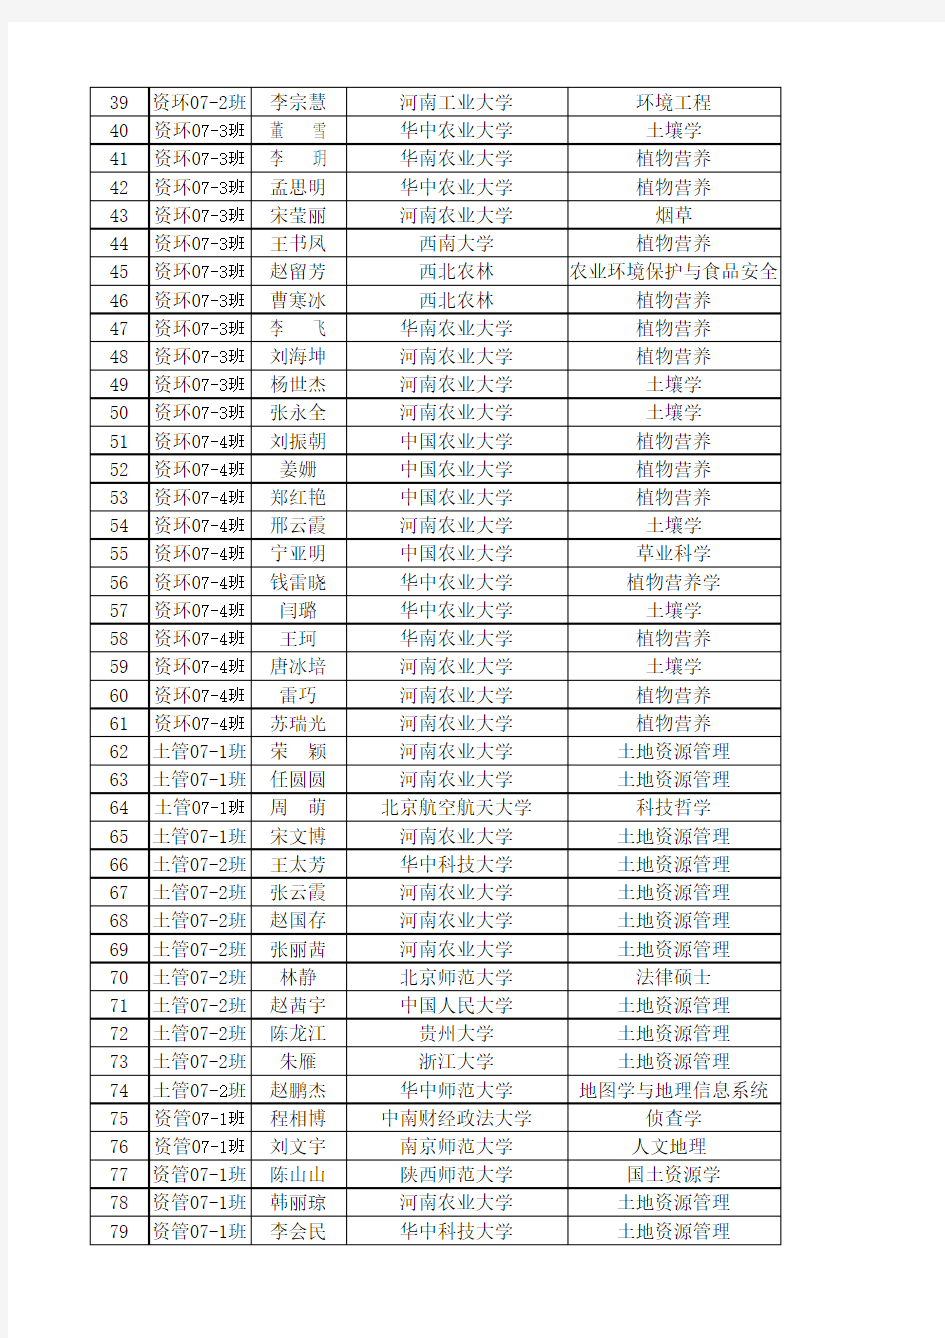 河南农业大学资源与环境学院历年毕业生考研名单(2011—2014年)